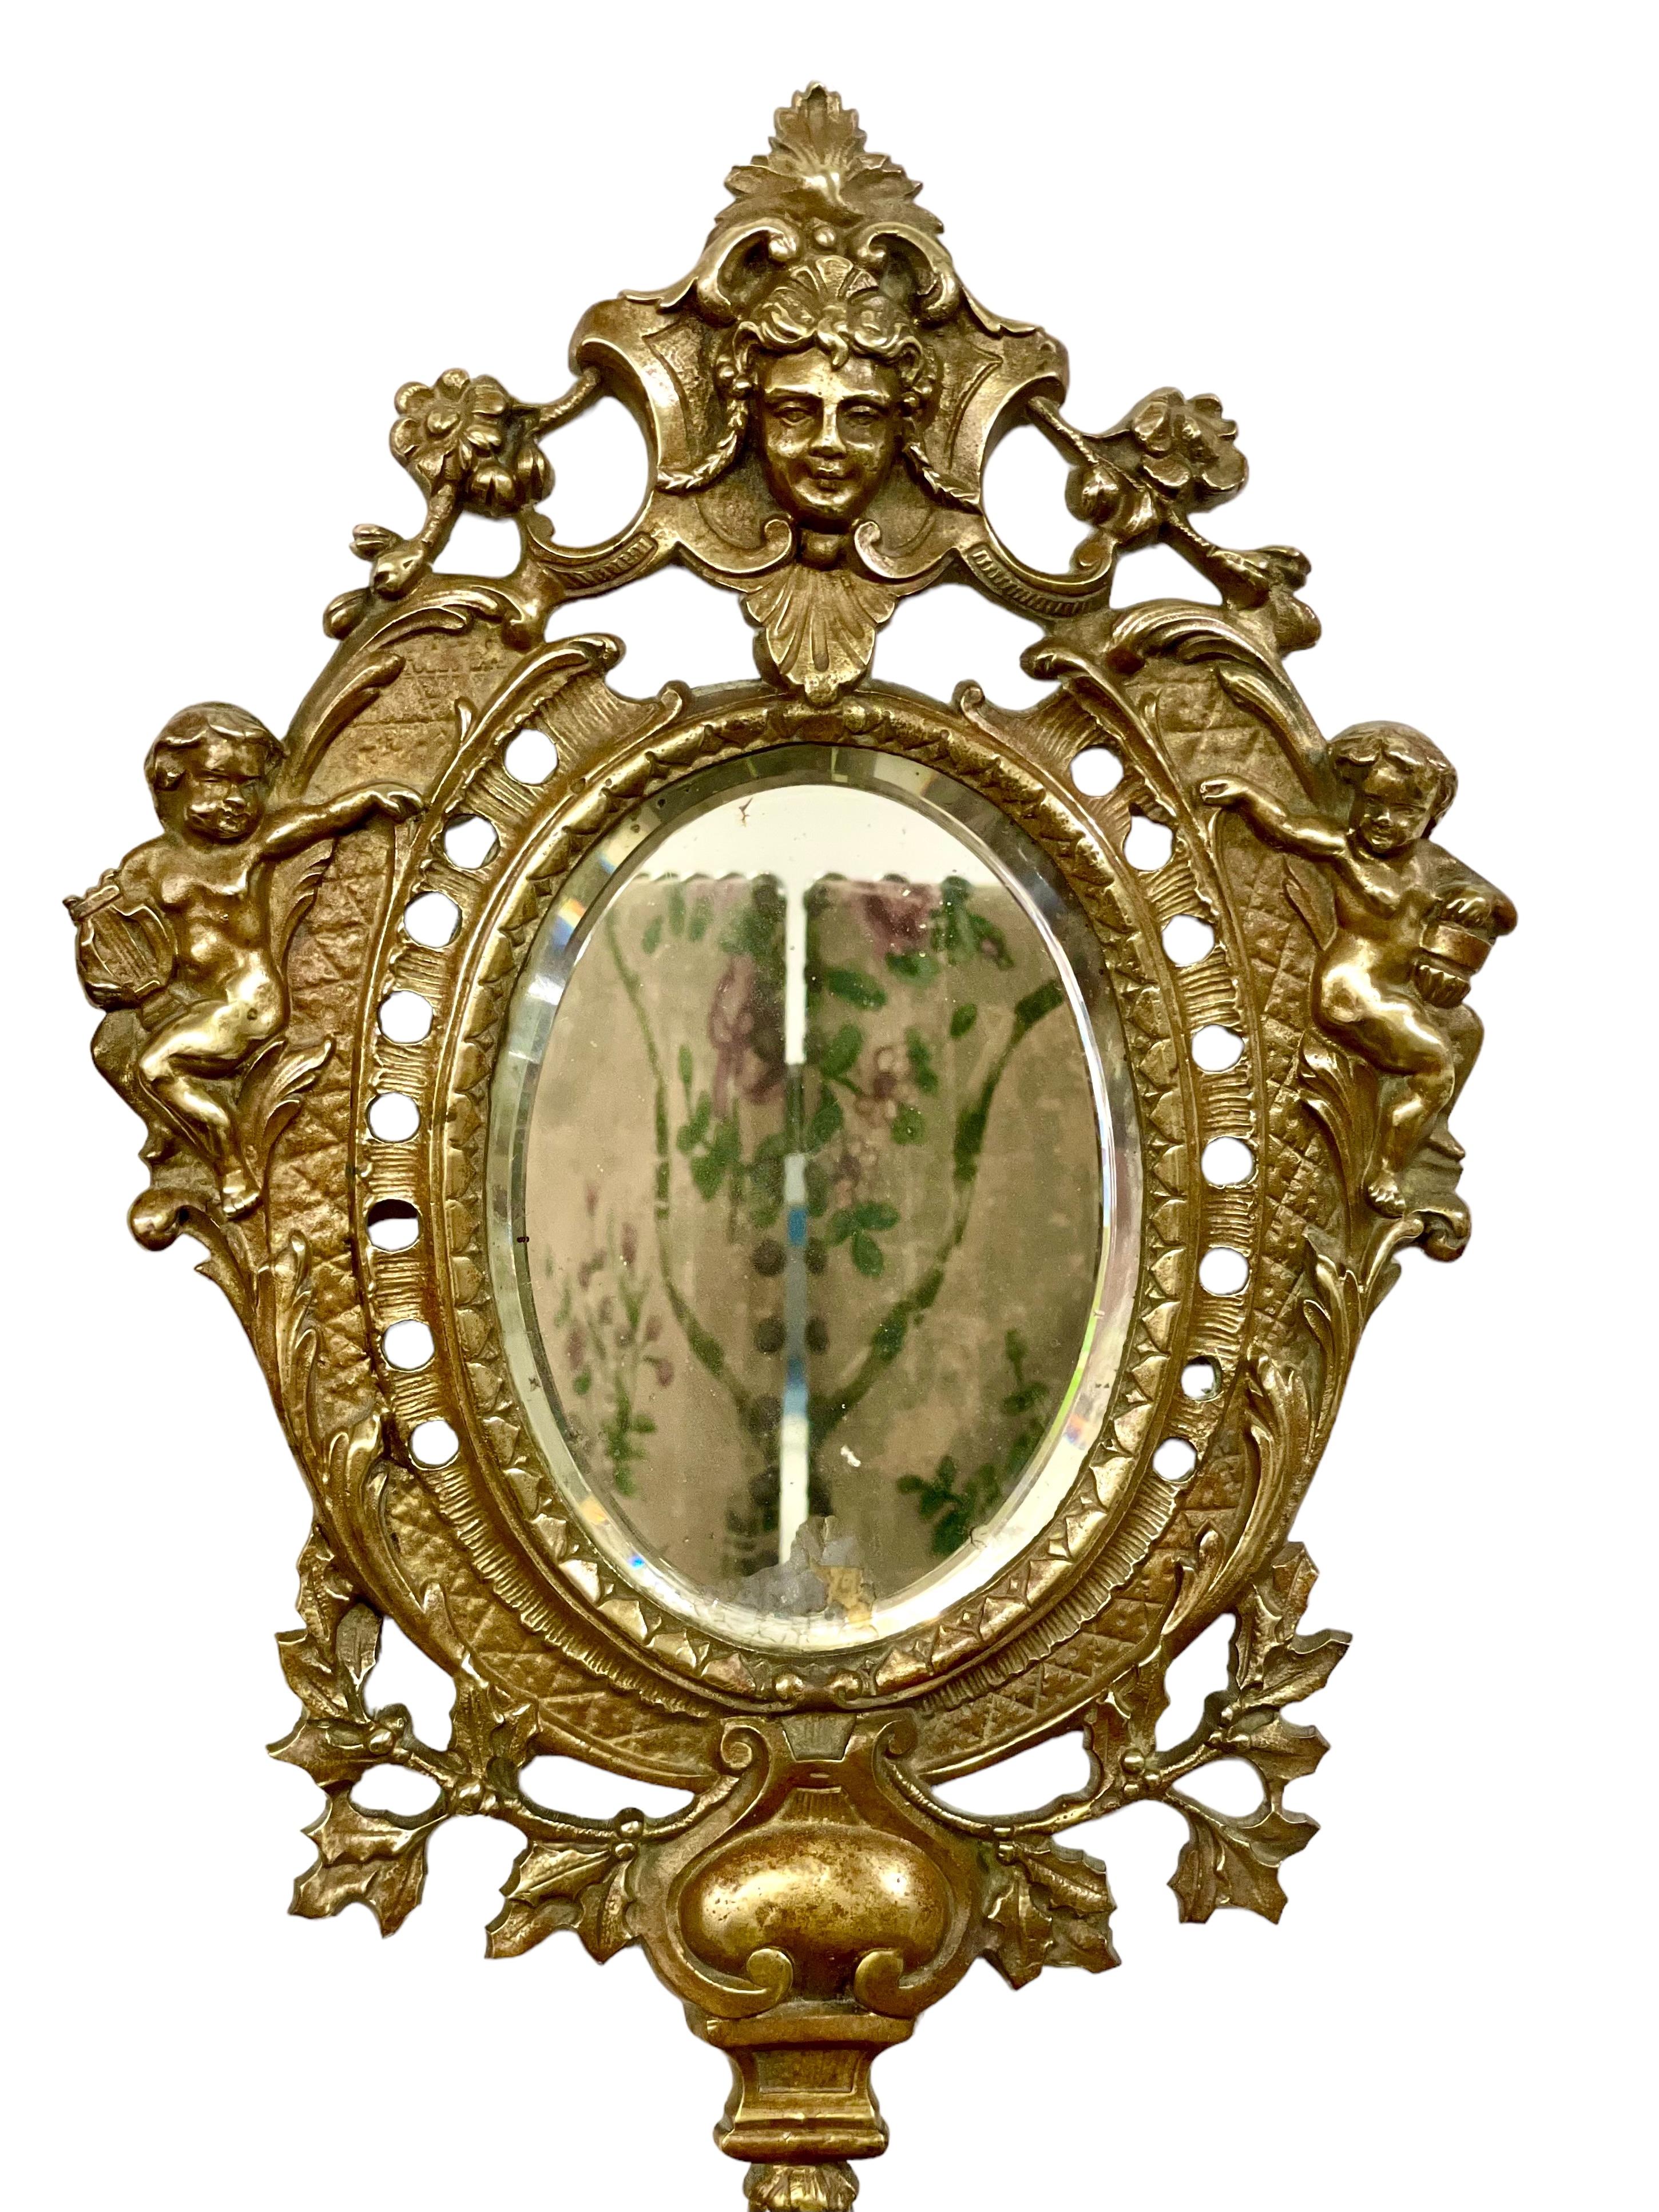 Ein feines Paar vergoldeter Bronze-Wandgirandolen aus dem 19. Jahrhundert, jede mit ihrer originalen ovalen Spiegelplatte mit abgeschrägter Kante und mit drei Beleuchtungsarmen mit verzierten Kerzenhaltern und Tropfschalen ausgestattet. Die fein